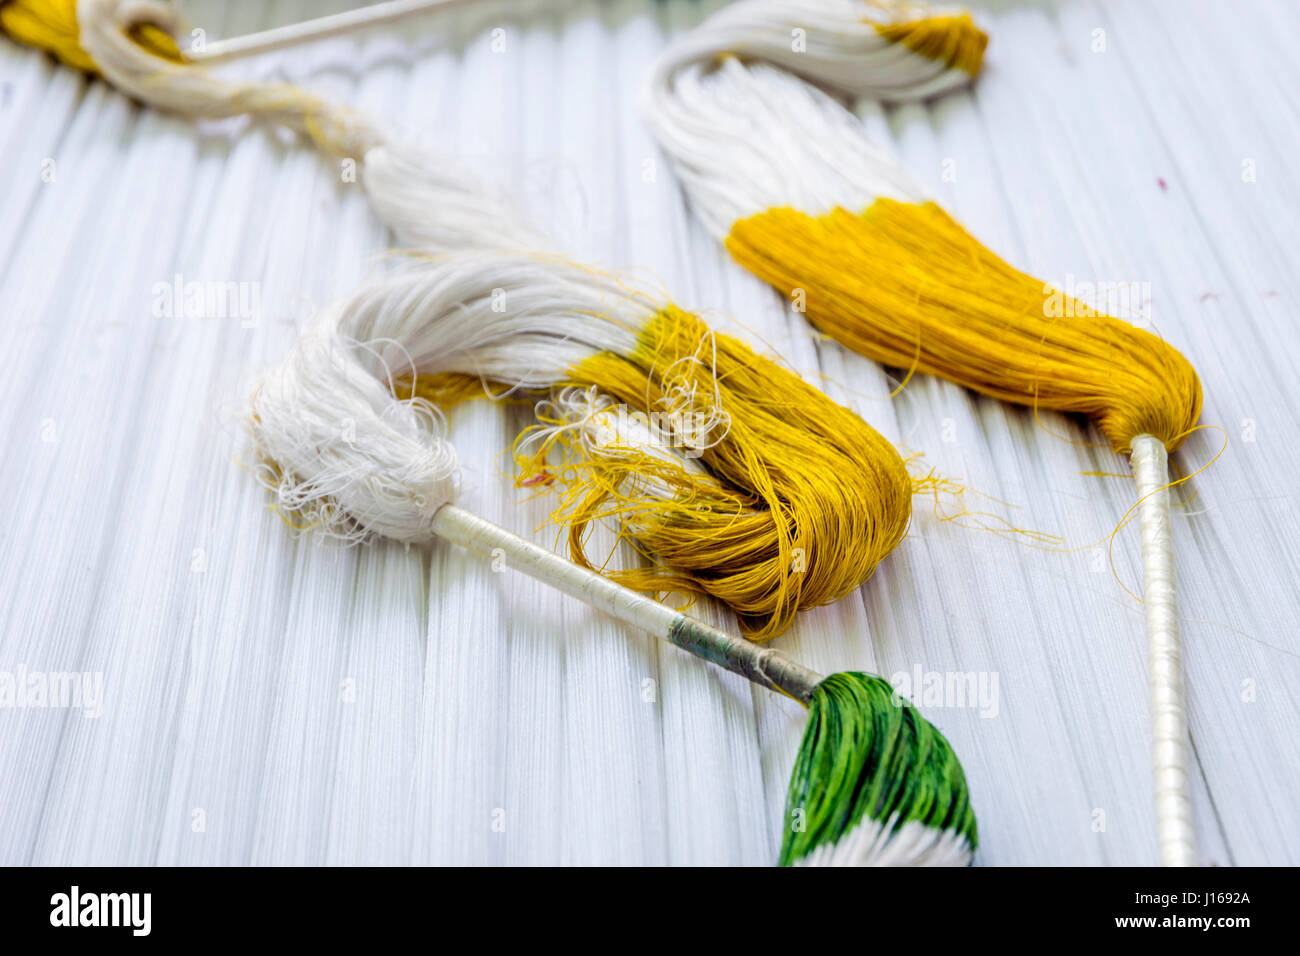 L'ouzbek traditionnel processus de mort de soie et la production de tissus, de l'Ouzbékistan Banque D'Images